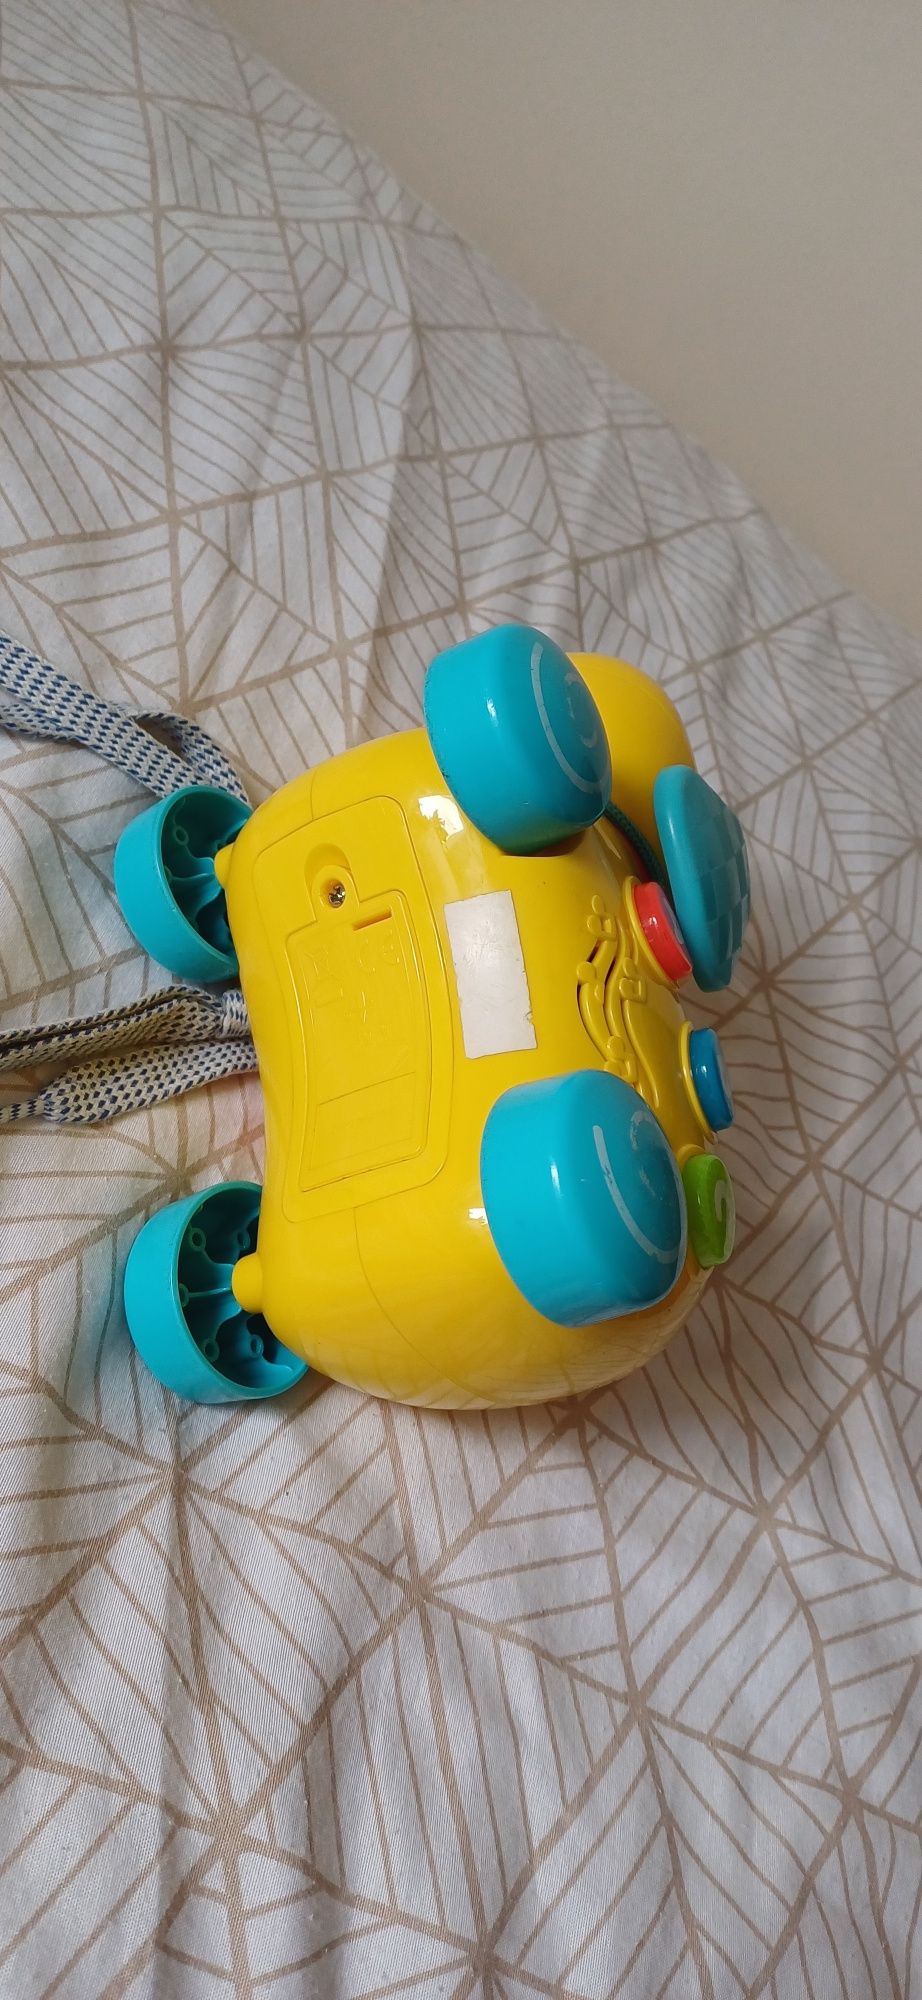 Piesek interaktywny zabawka ze sznureczkiem do ciągnięcia